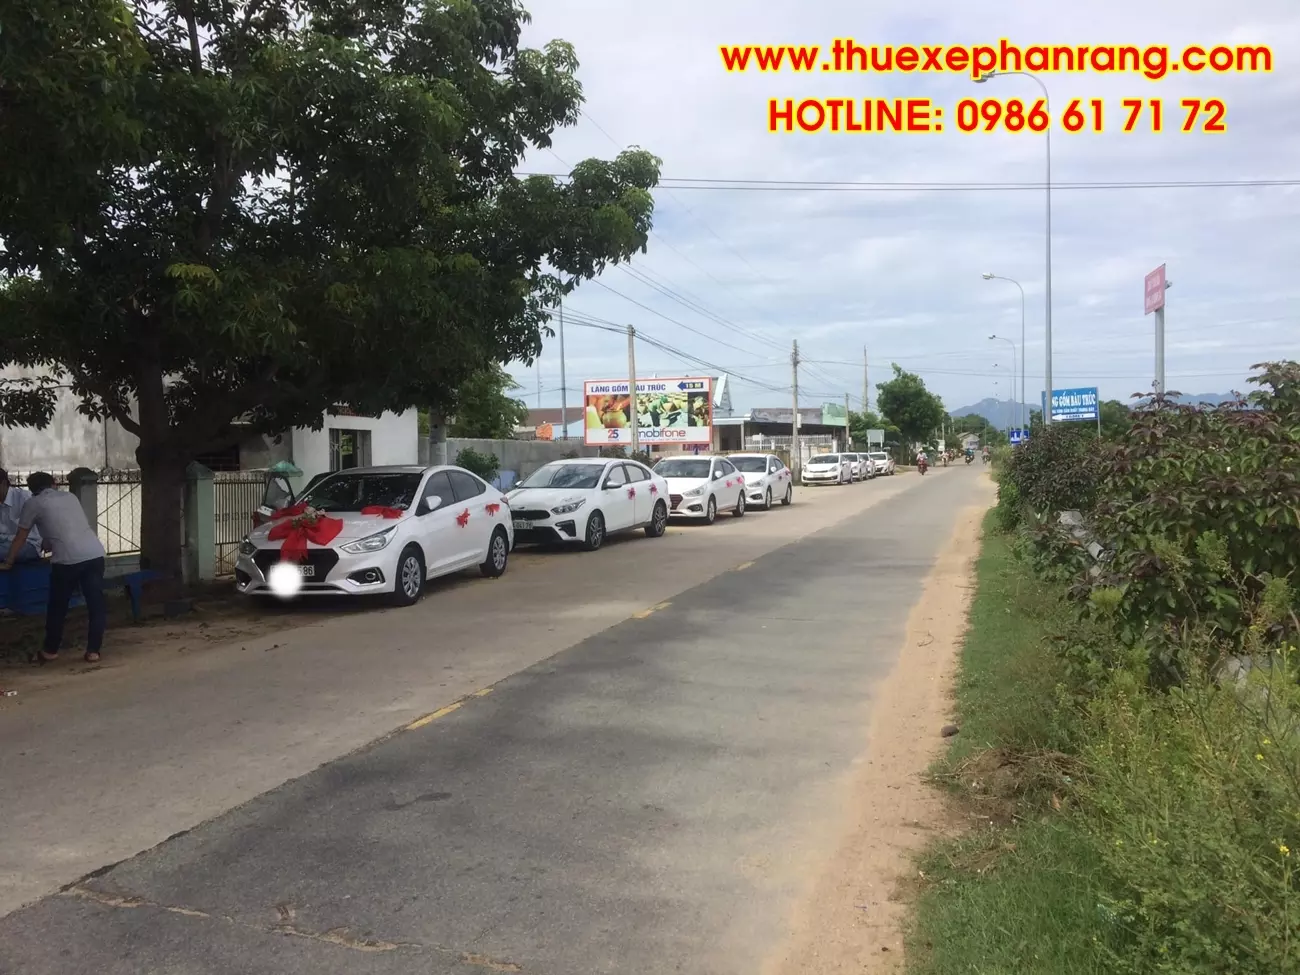 Cho thuê xe du lịch 4 chỗ giá rẻ uy tín chuyên nghiệp tại huyện Ninh Hải Ninh Thuận